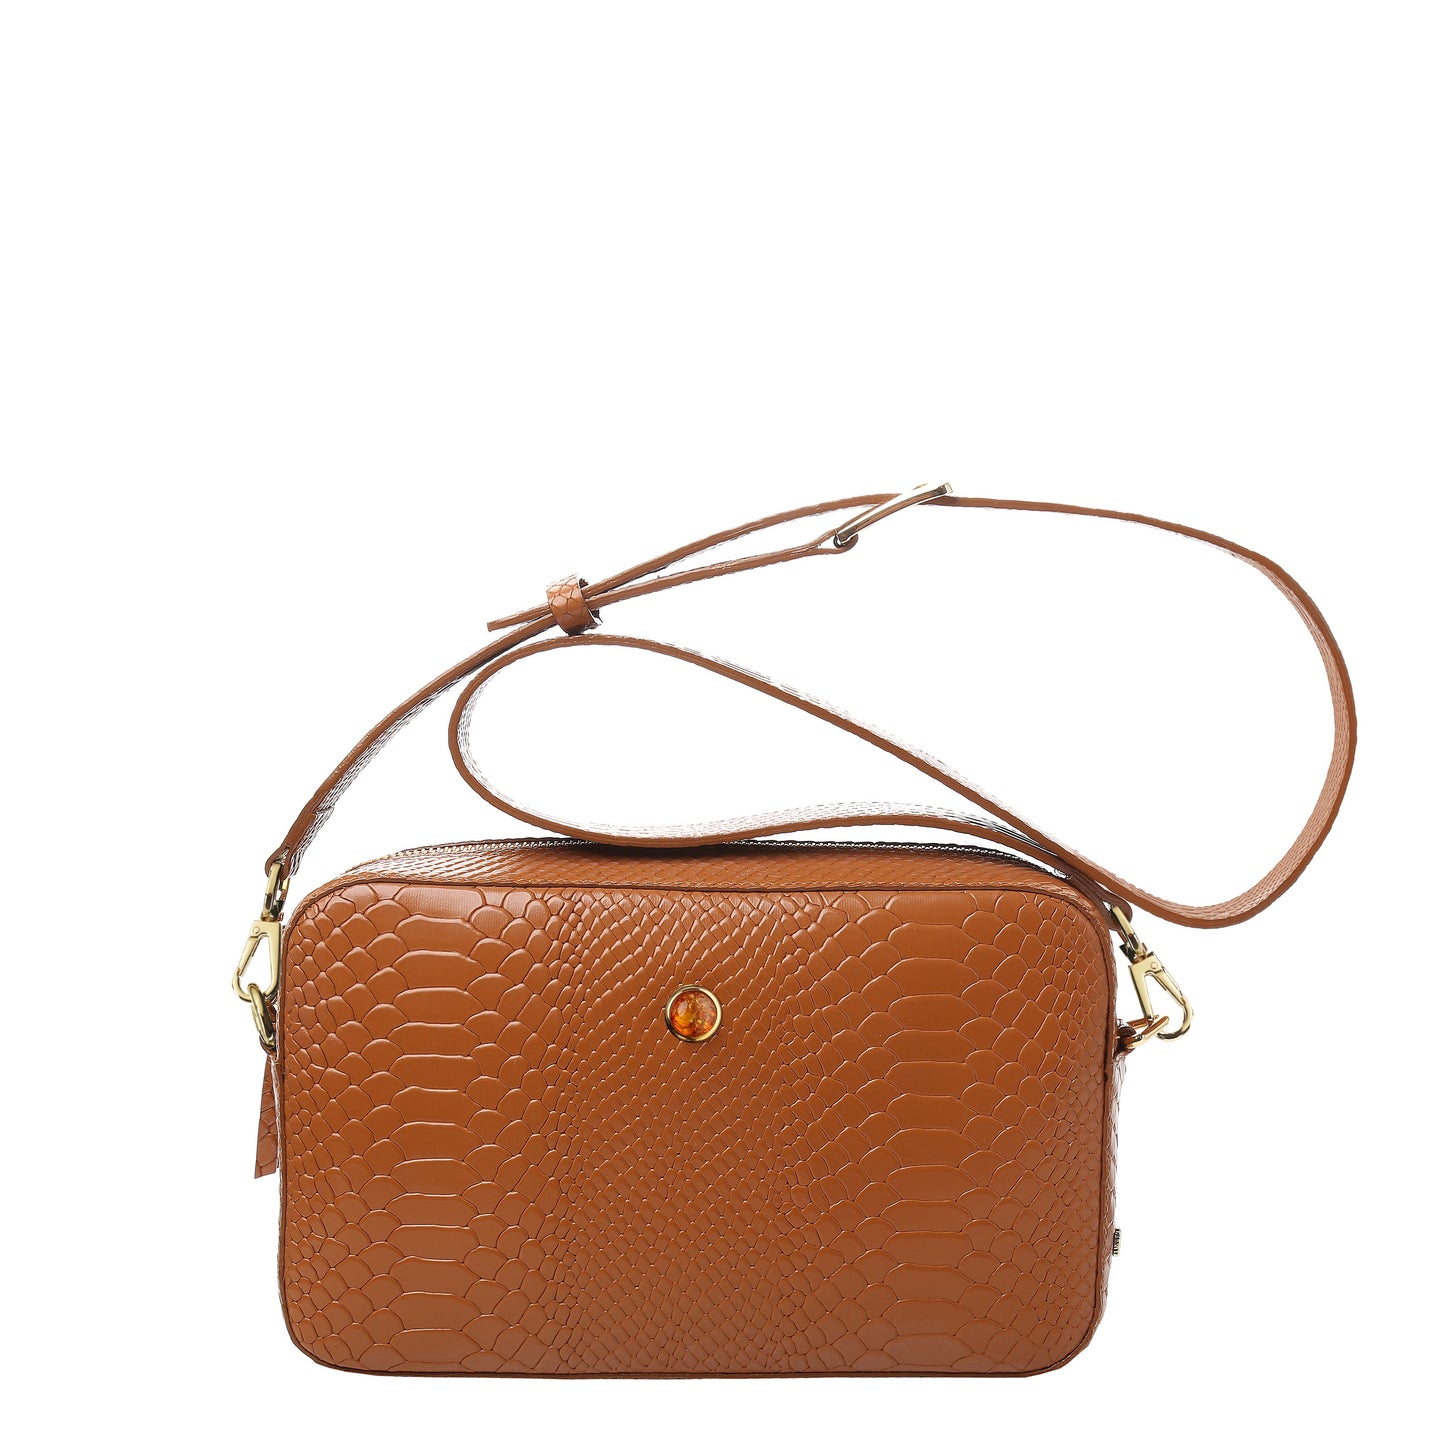 ALFIE COGNAC women's leather handbag